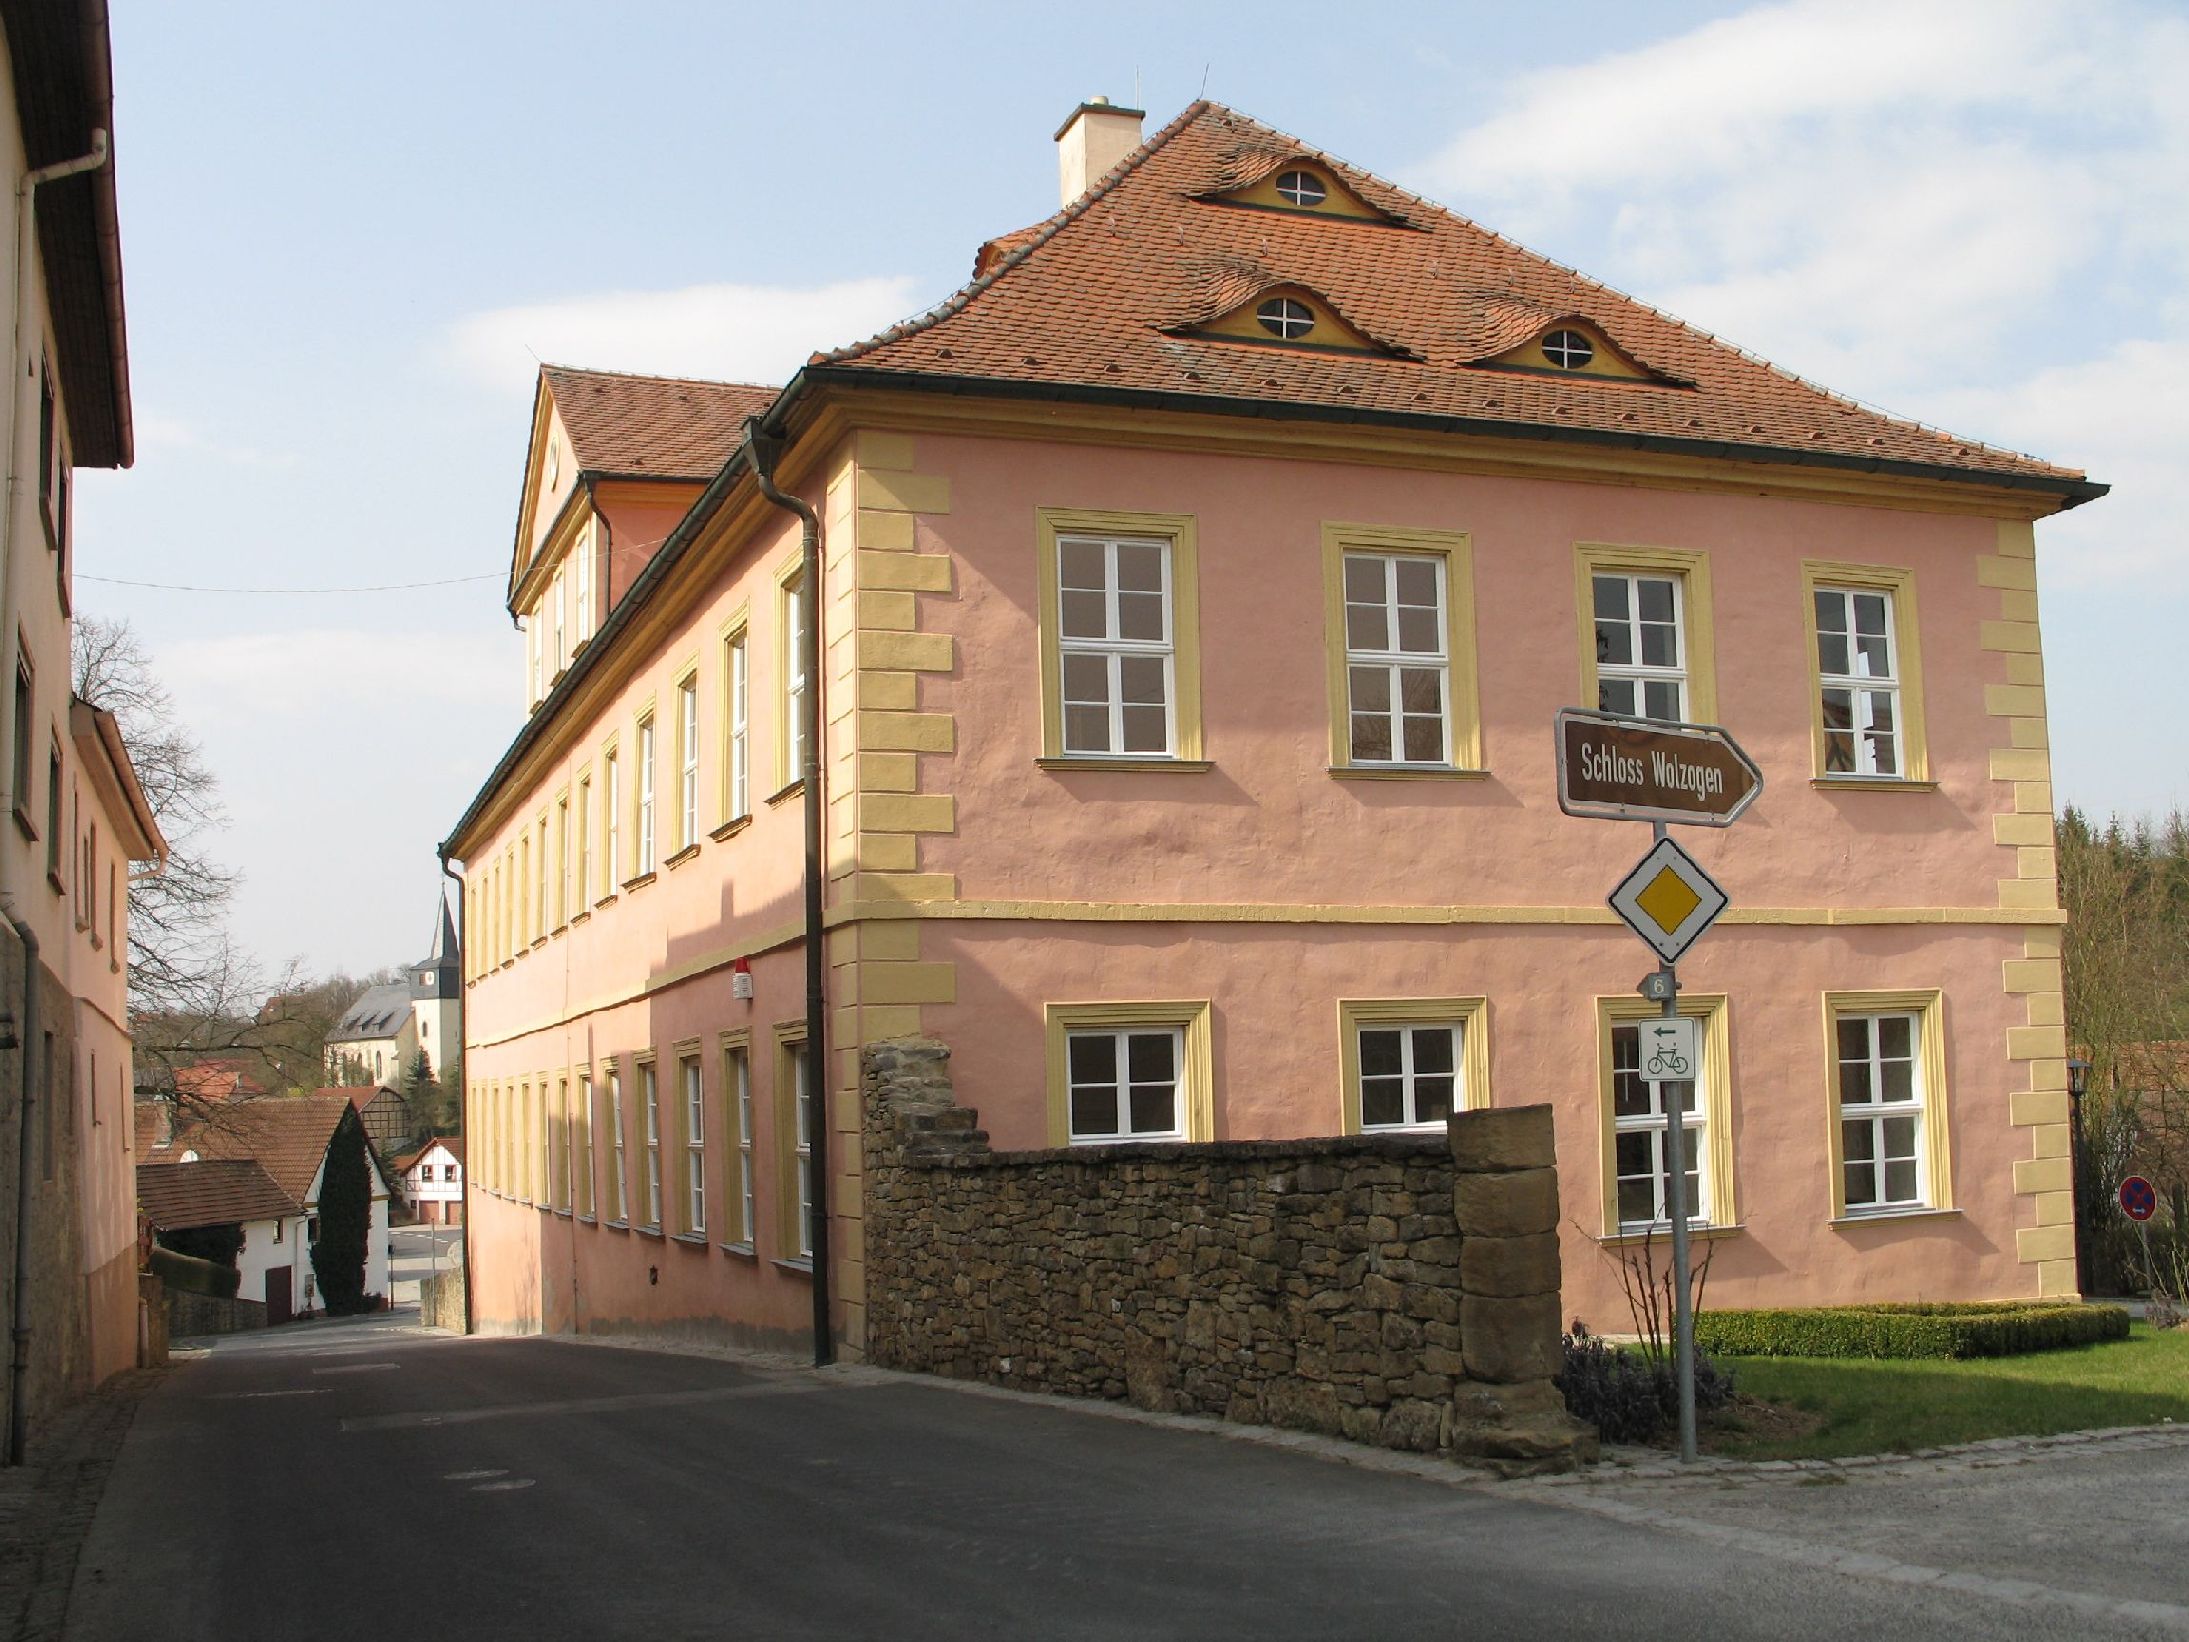 Schloss-Wolzogen